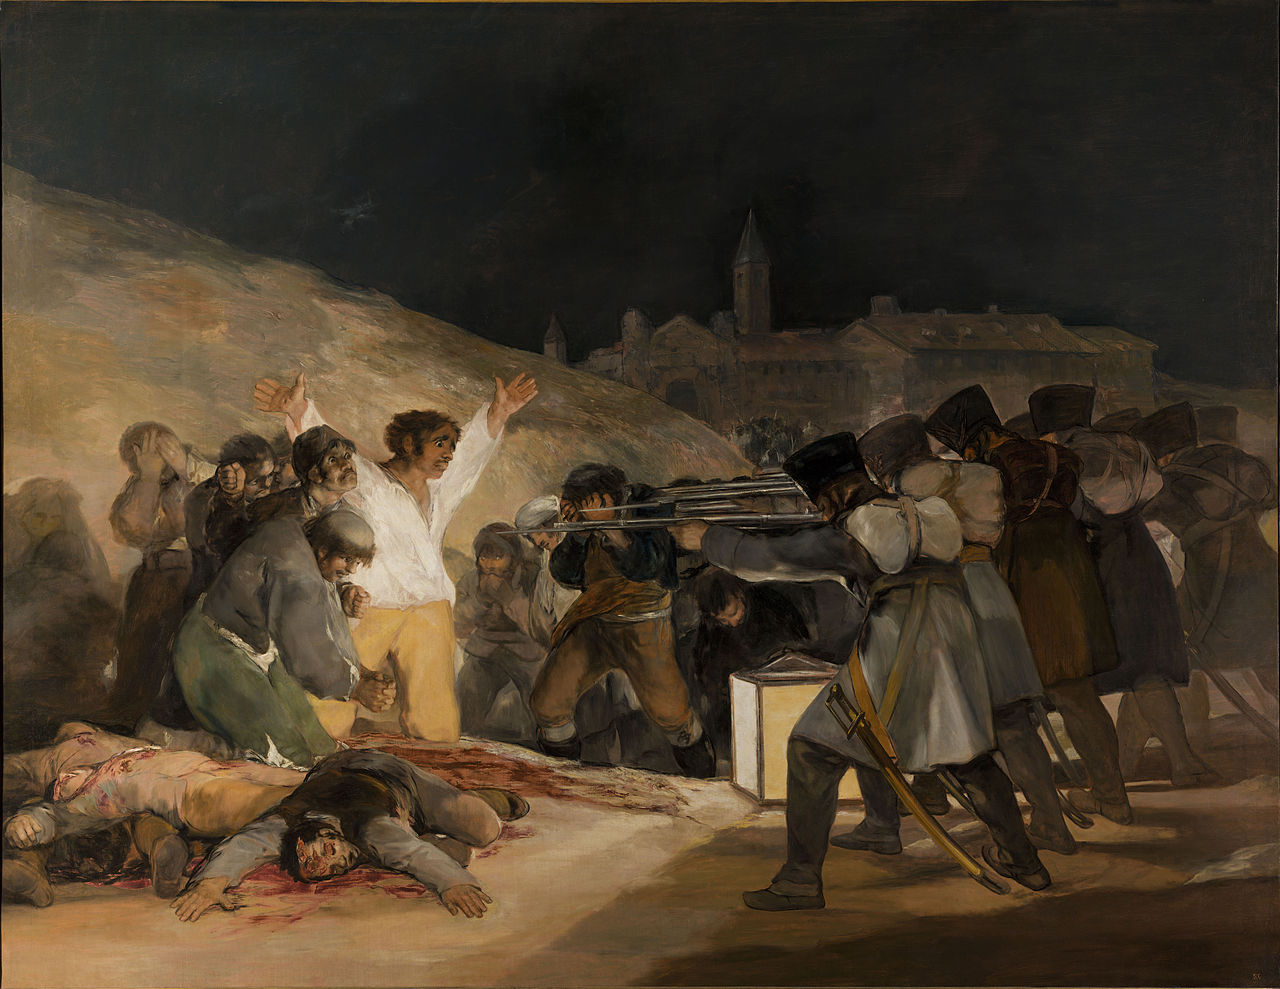 El tres de mayo de 1808 by Francisco Goya - 1814 Museo del Prado